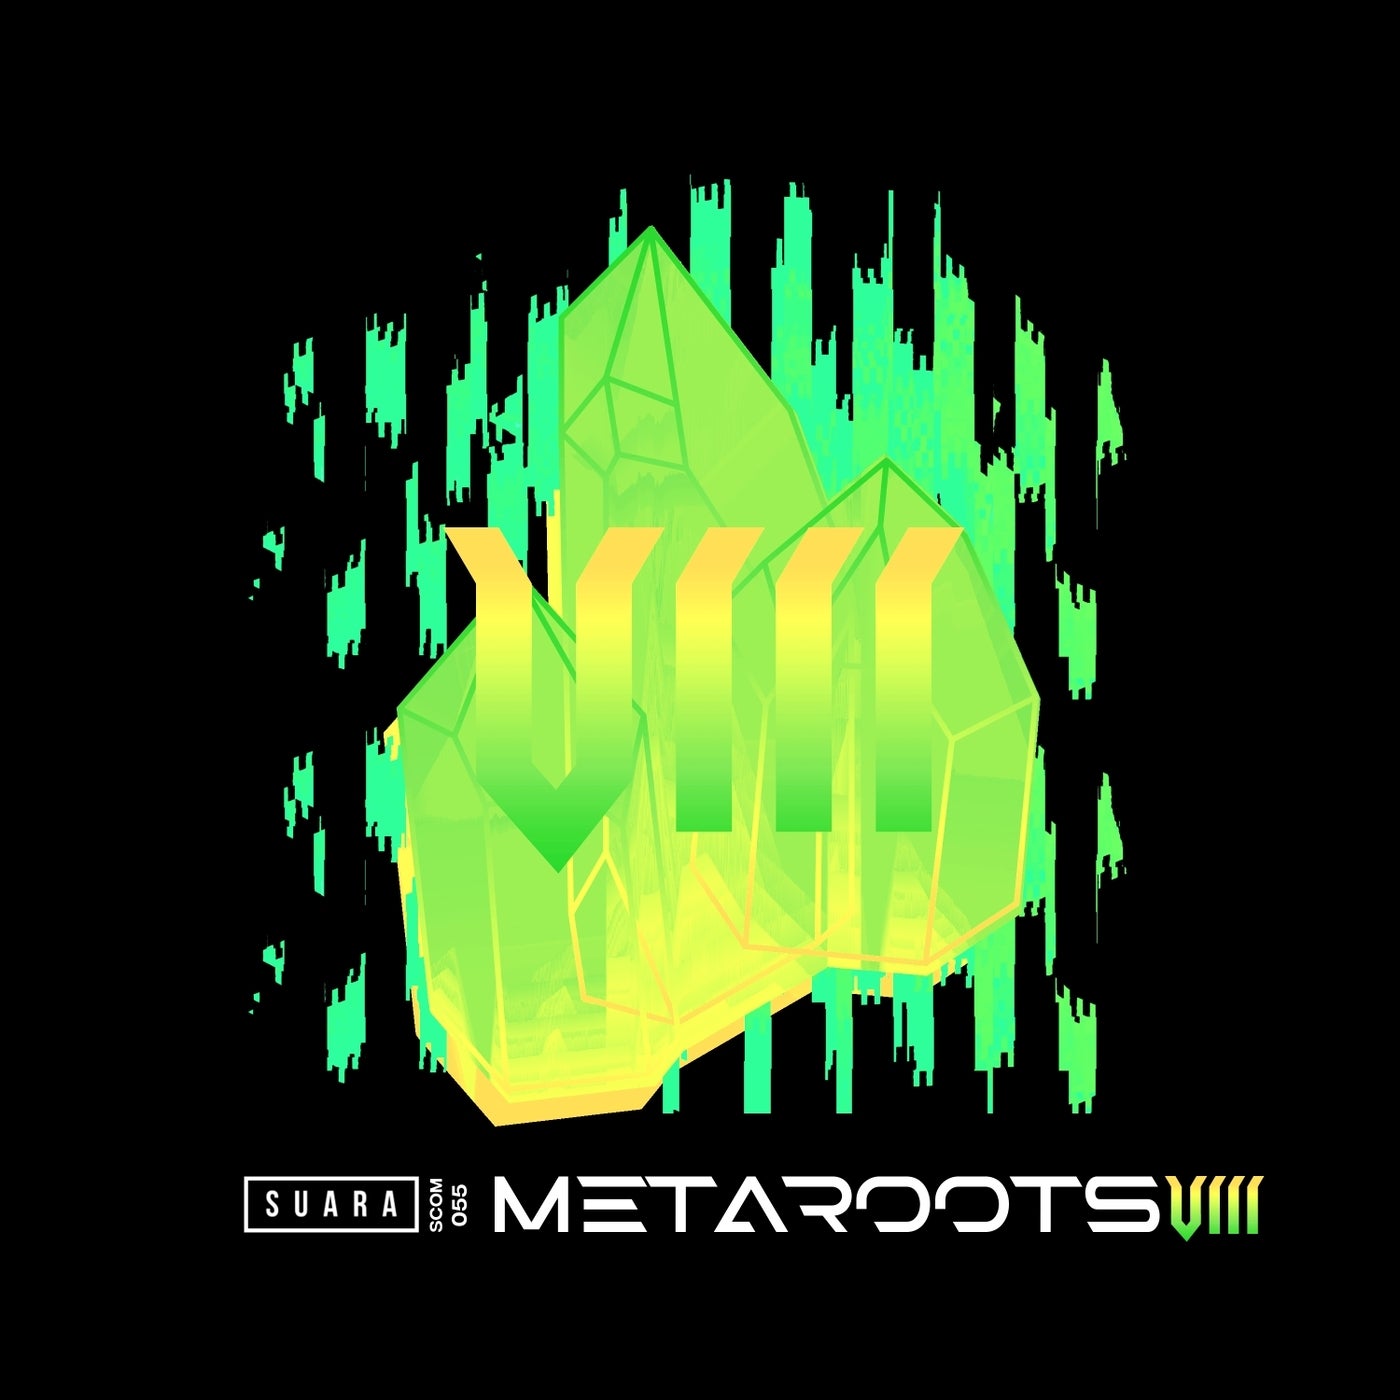 Metaroots 8